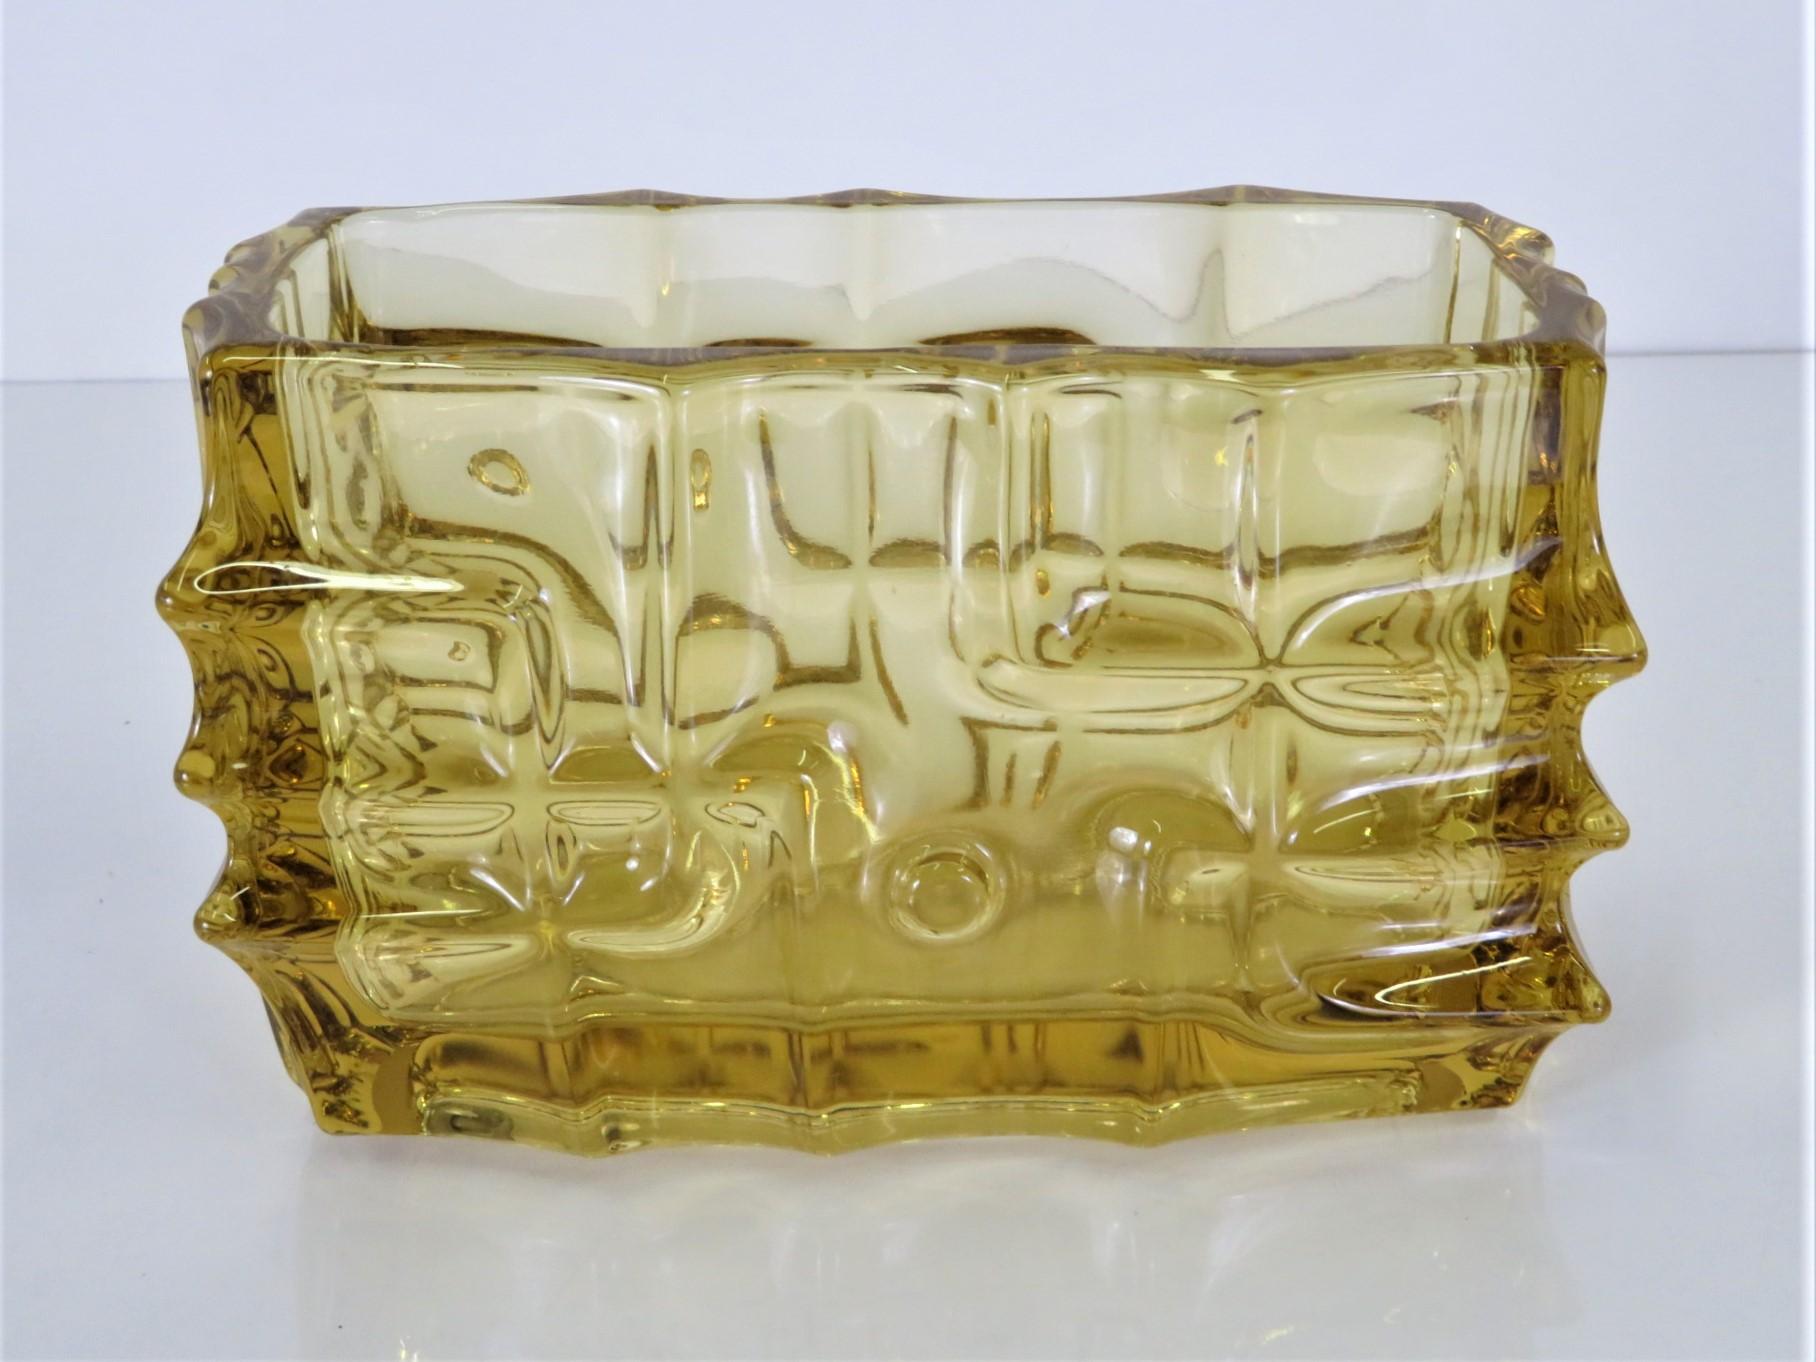 Vladislav Urban, né en 1937 à Pilsen, en Tchécoslovaquie, est un créateur de verre et de bijoux. Urban, entre autres, a joué un rôle déterminant dans l'évolution de la production tchèque de verre pressé. Ce vase en verre pressé ambre, datant de